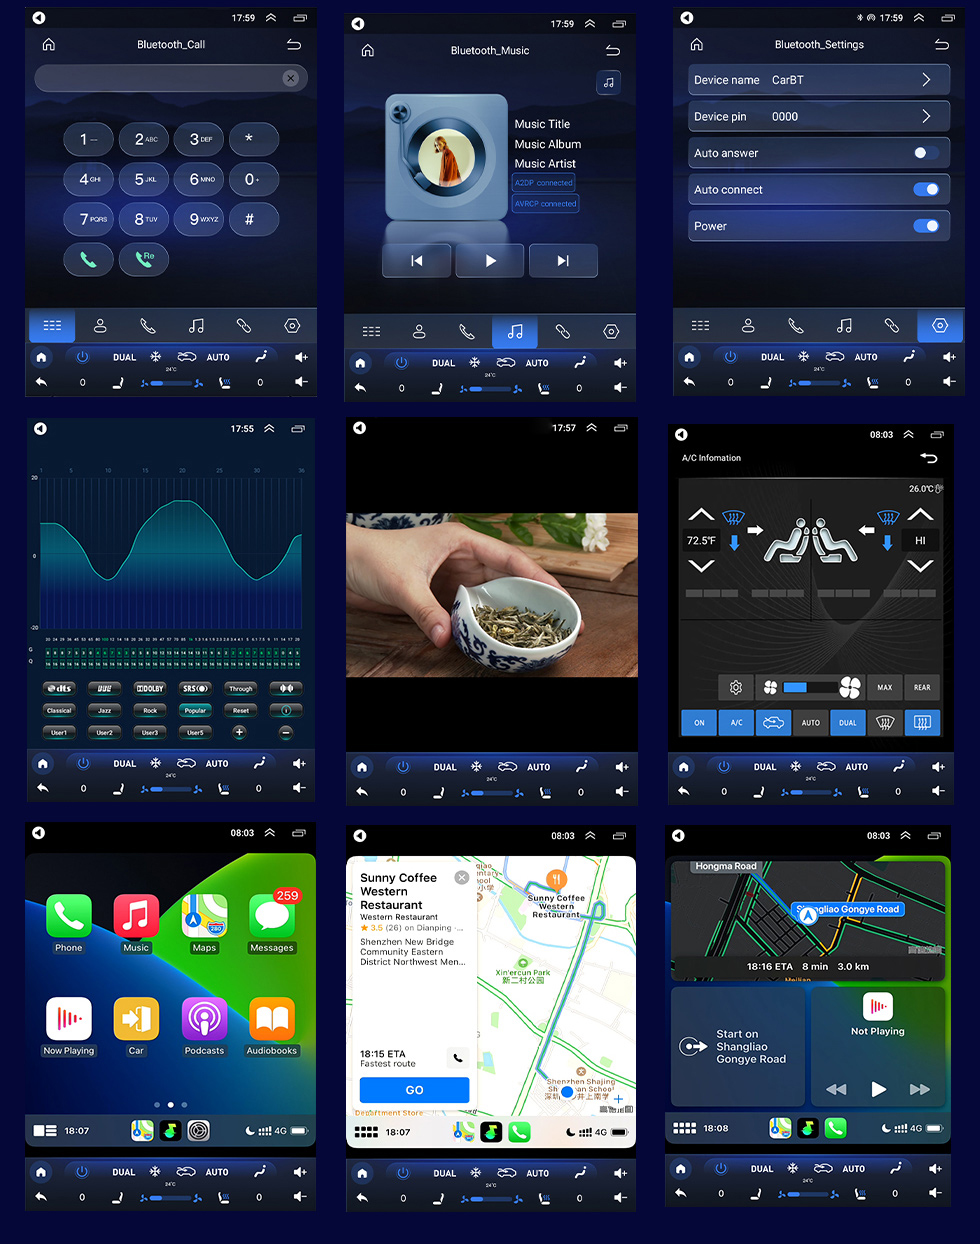 Seicane 9,7-дюймовый сенсорный экран Android 10.0 Stereo для Dodge Ram Aftermarket 2013-2018 гг. Радиоприемник со встроенным Carplay Поддержка Bluetooth GPS Управление на рулевом колесе